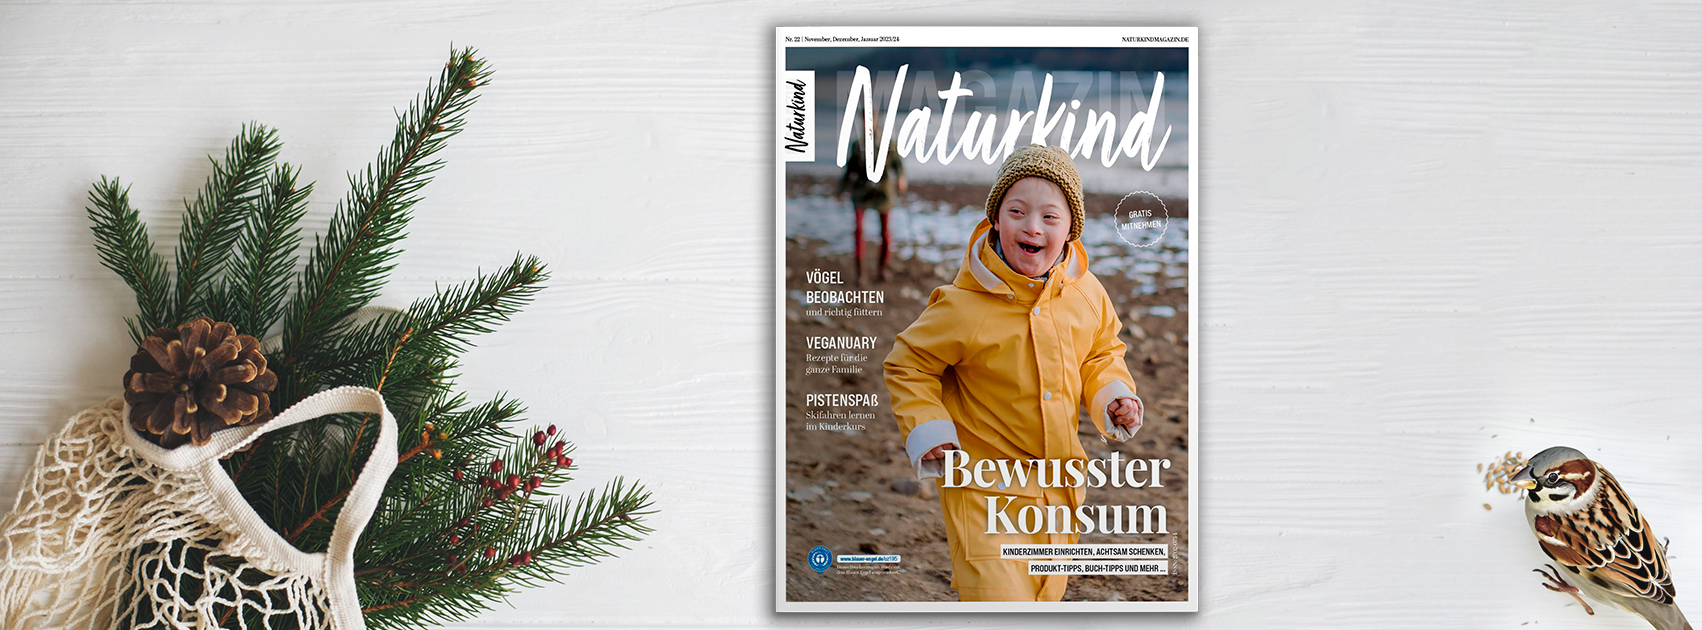 Naturkind Magazin, Elternzeitschrift, Eltern Magazin, Natur, Nachhaltigkeit